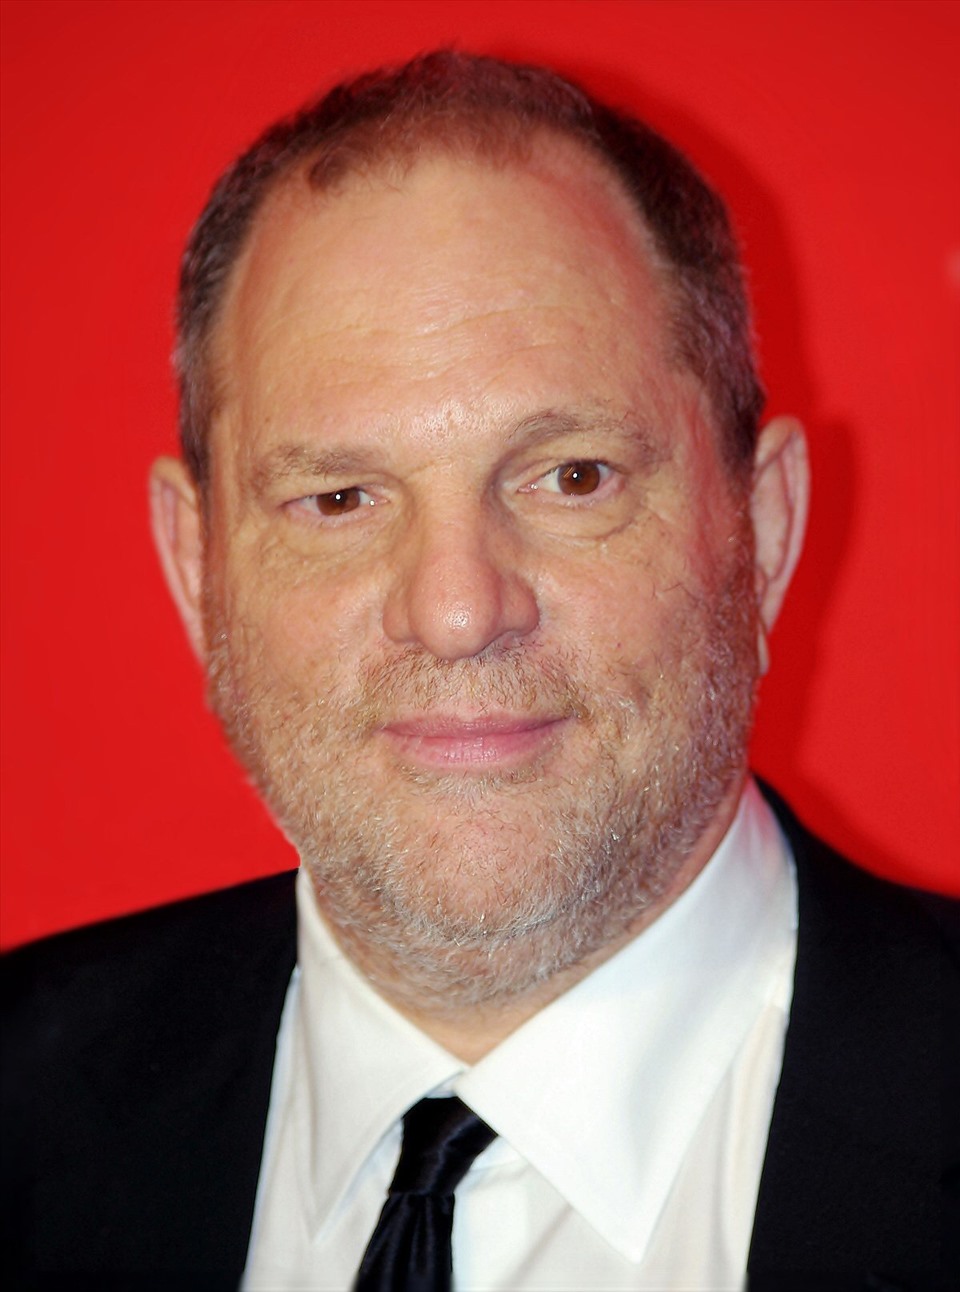 Harvey Weinstein bị cáo buộc quấy rối tình dục. Ảnh: Xinhua